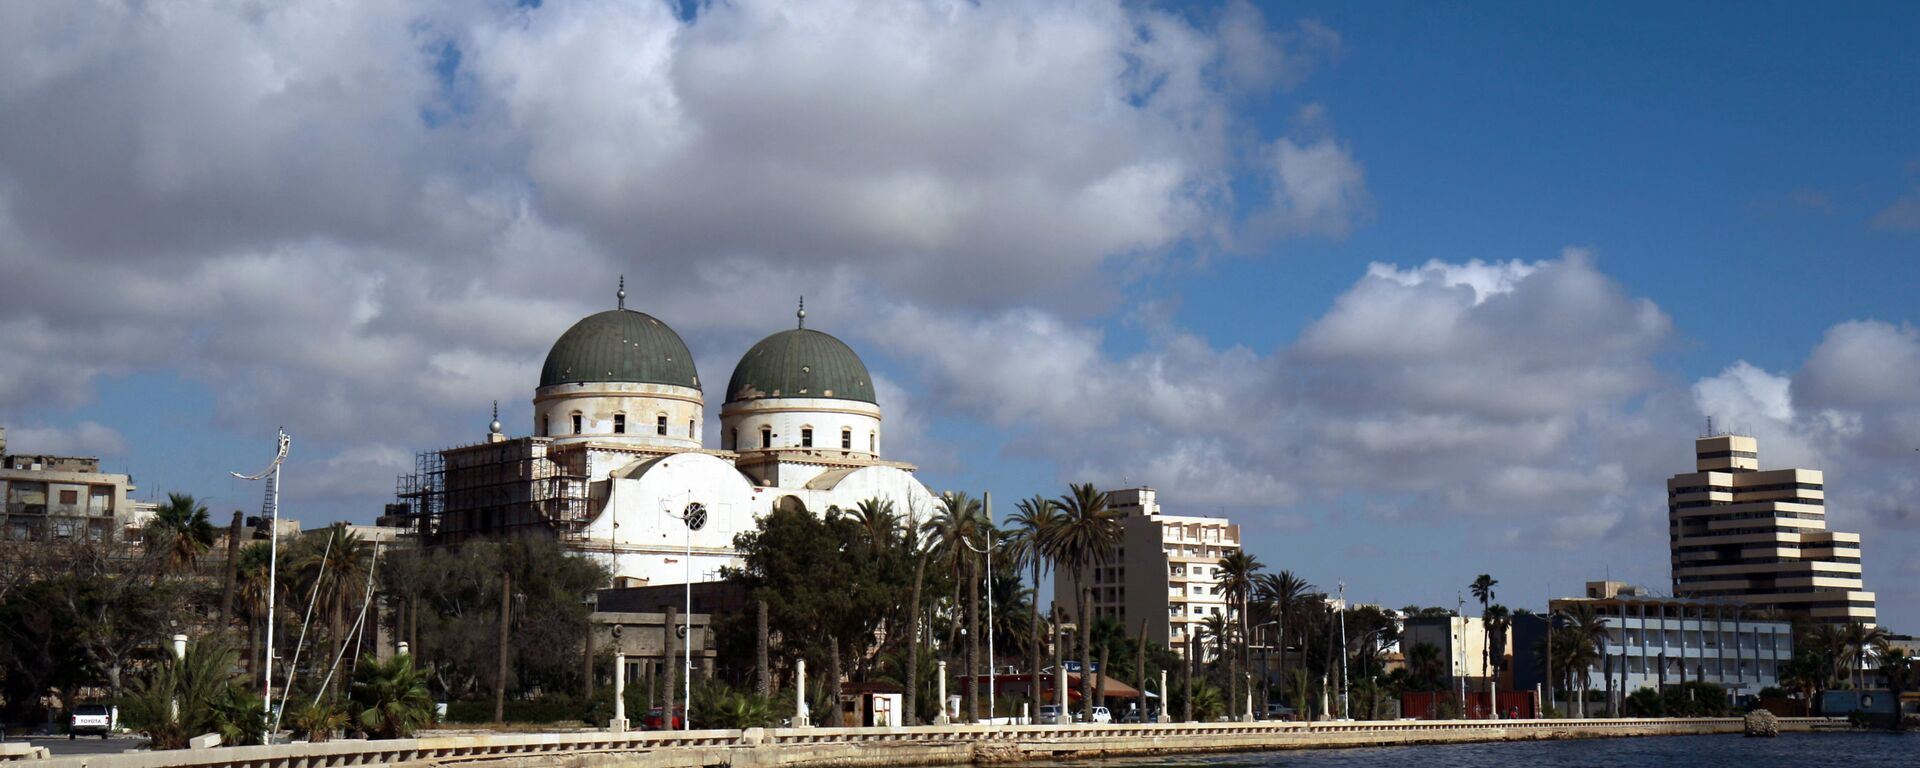  بنغازي، ليبيا يونيو 2020 - سبوتنيك عربي, 1920, 26.04.2021